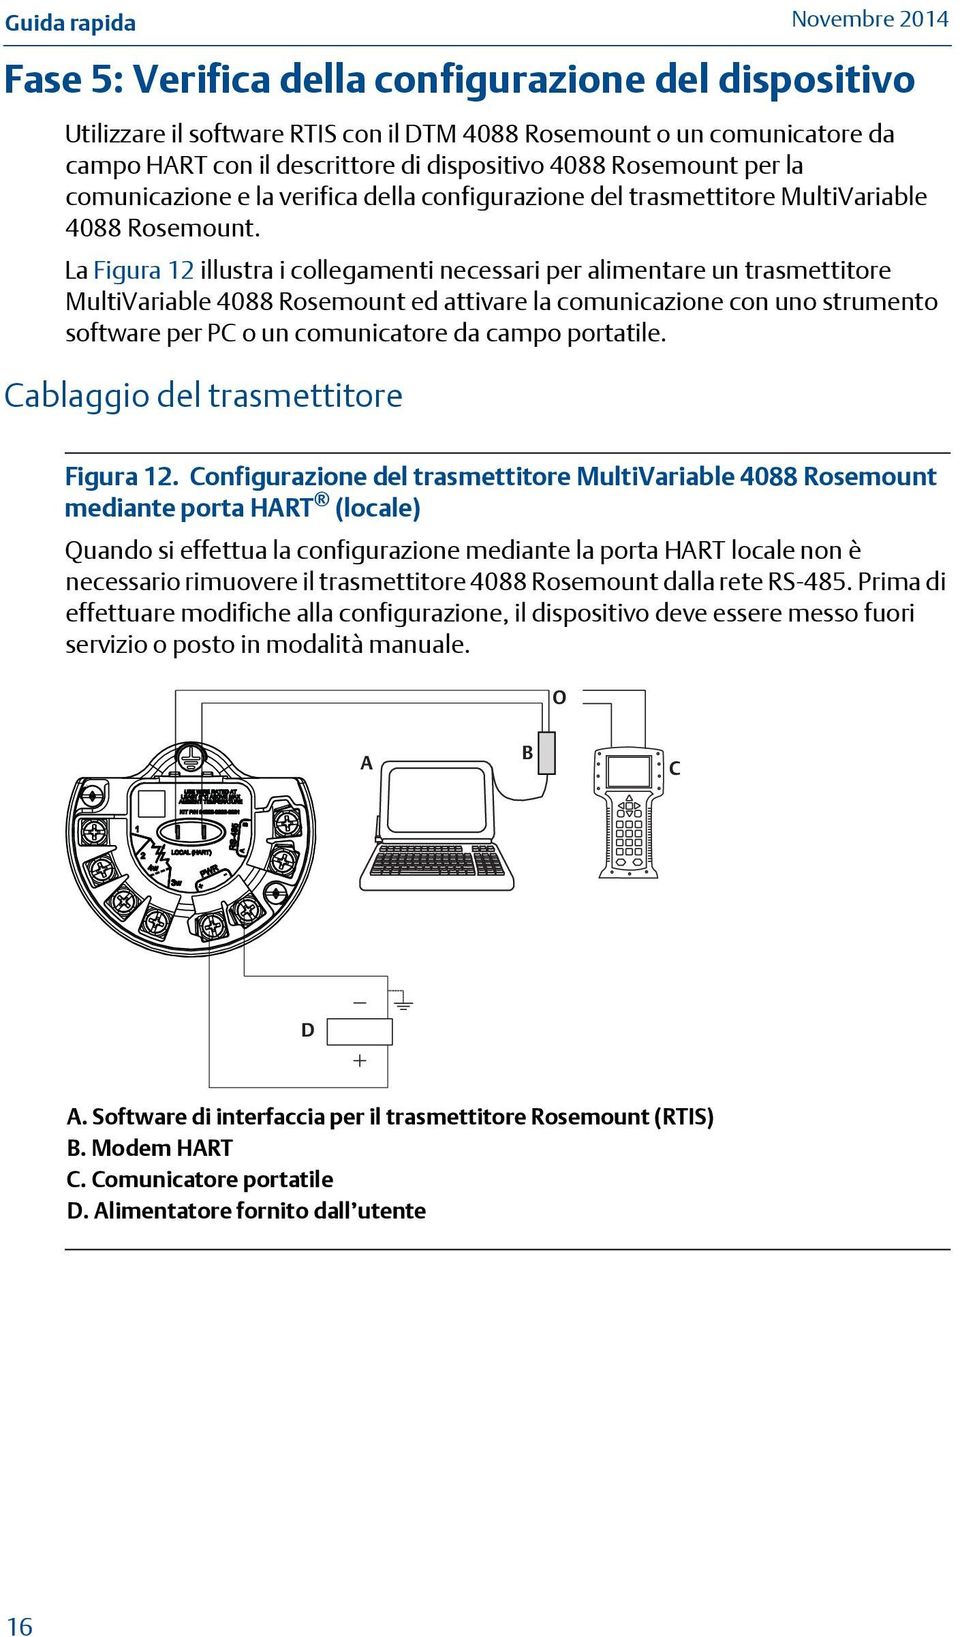 La Figura 12 illustra i collegamenti necessari per alimentare un trasmettitore MultiVariable 4088 Rosemount ed attivare la comunicazione con uno strumento software per PC o un comunicatore da campo